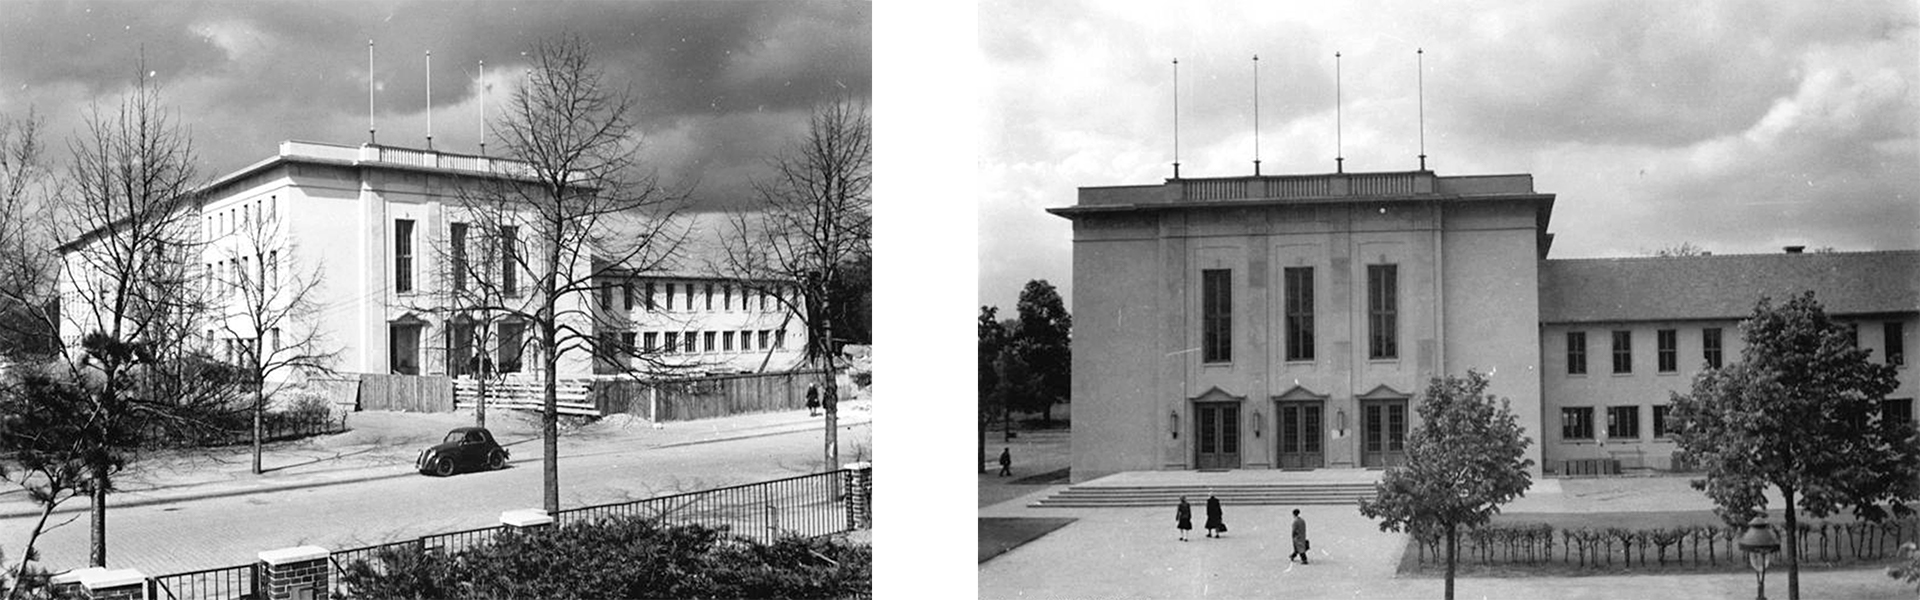 Abb. 5 & 6: Das AMO Kultur- und Kongresshaus kurz vor (links) und kurz nach der Fertigstellung (rechts).